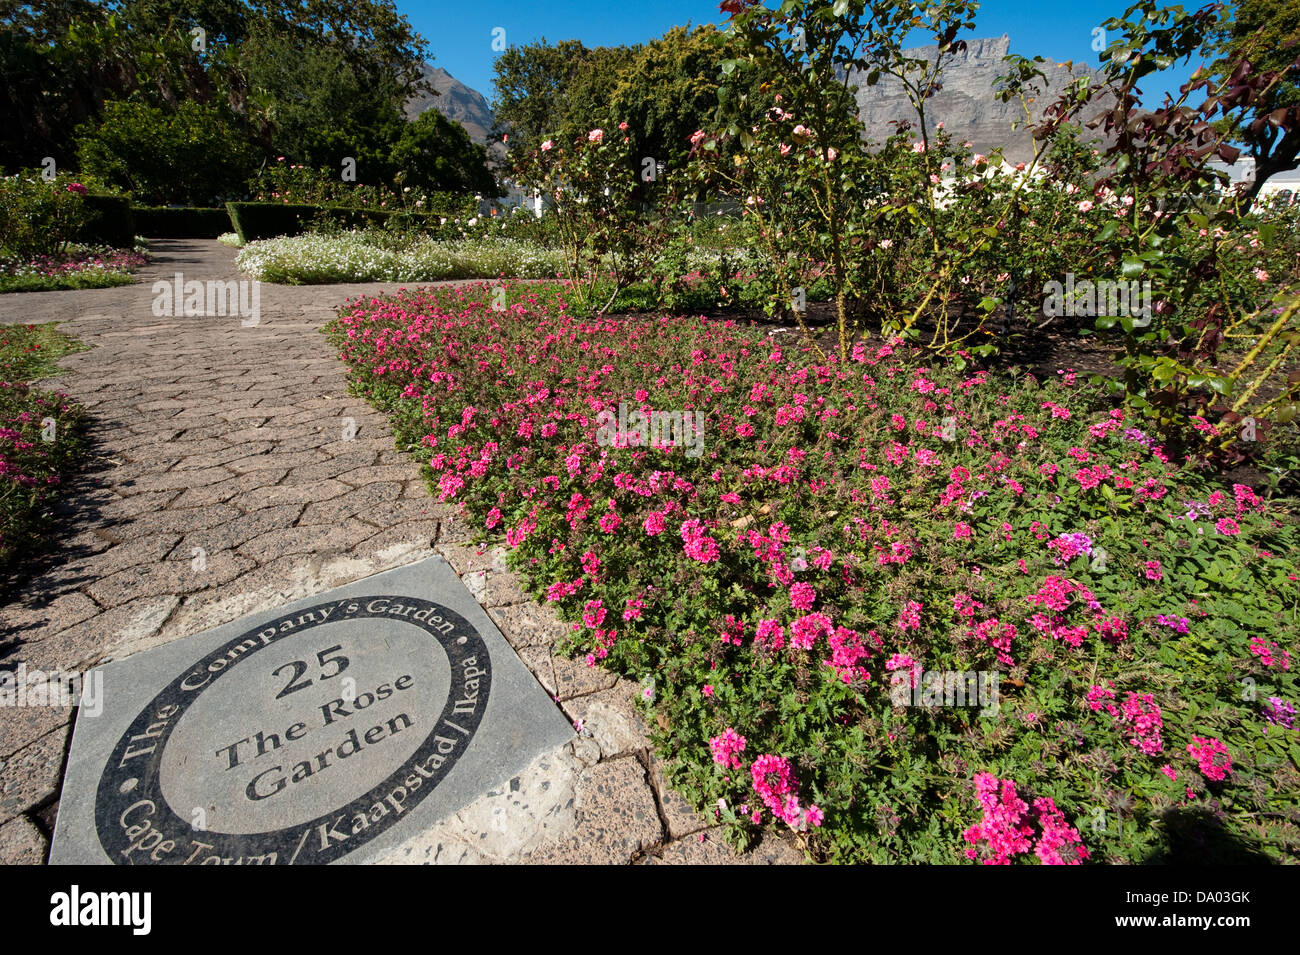 Jardín de rosas, el jardín de la empresa, Ciudad del Cabo, Sudáfrica Foto de stock